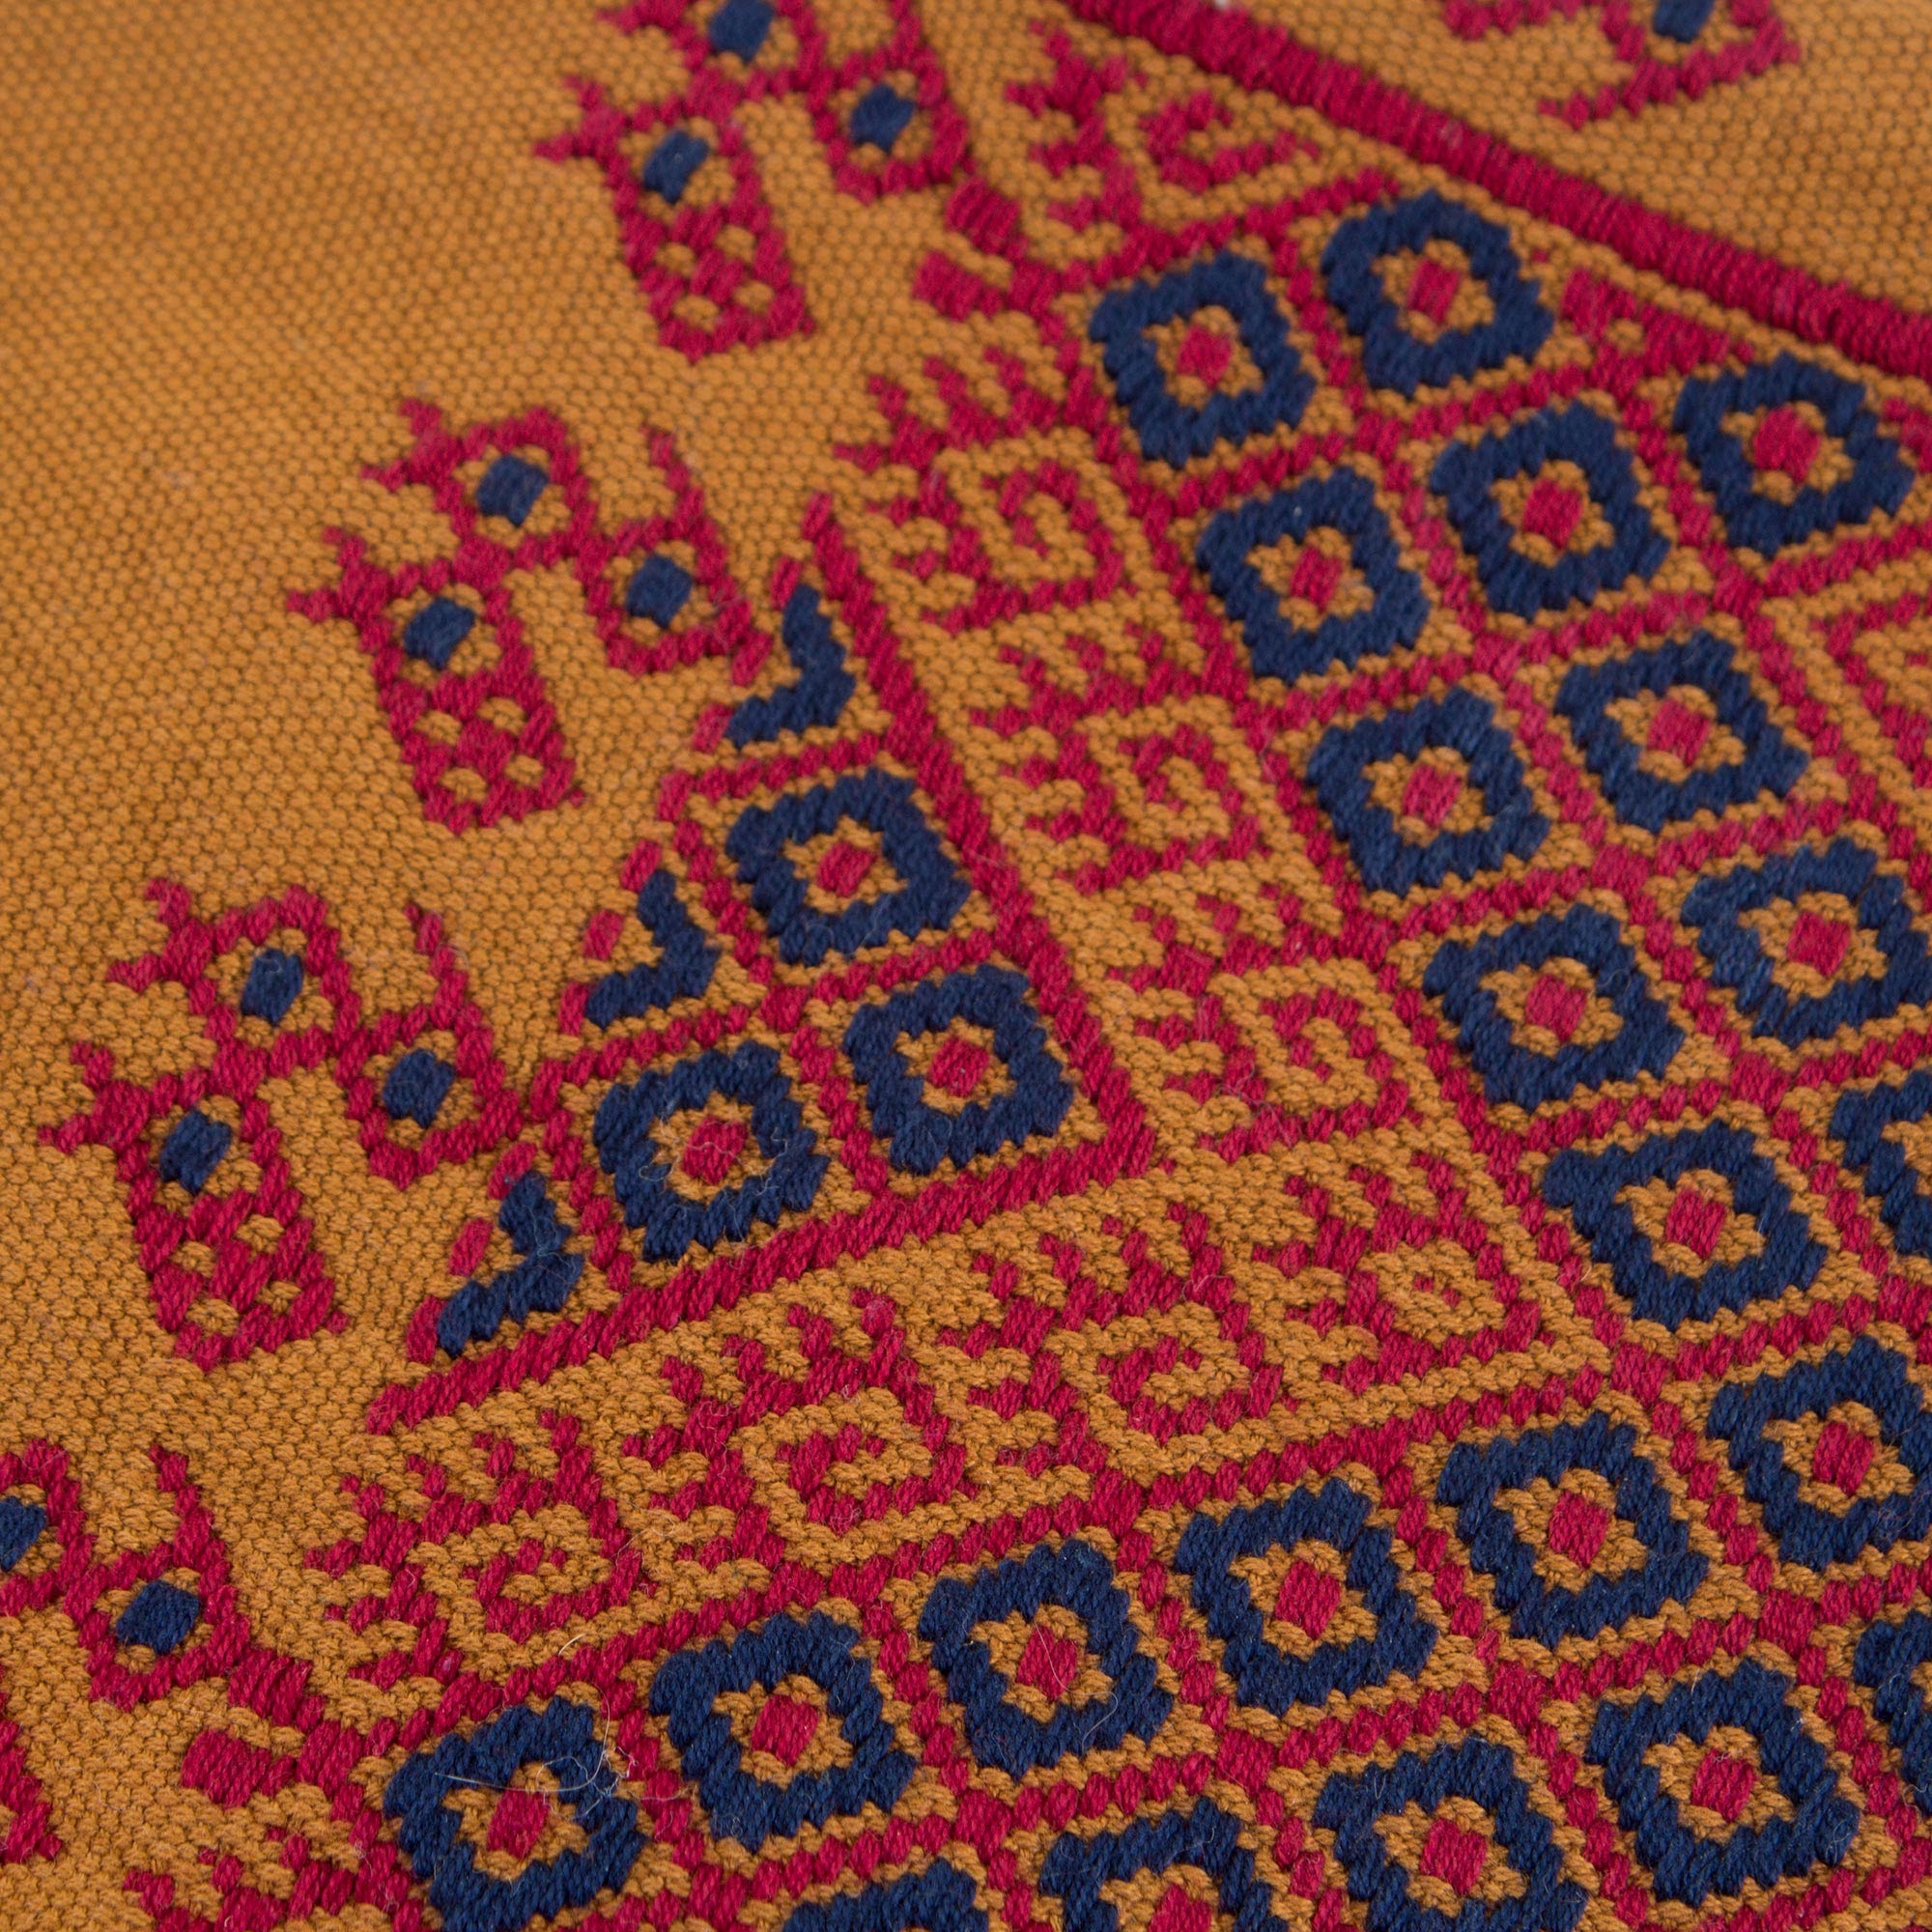 ancient mayan backstrap loom